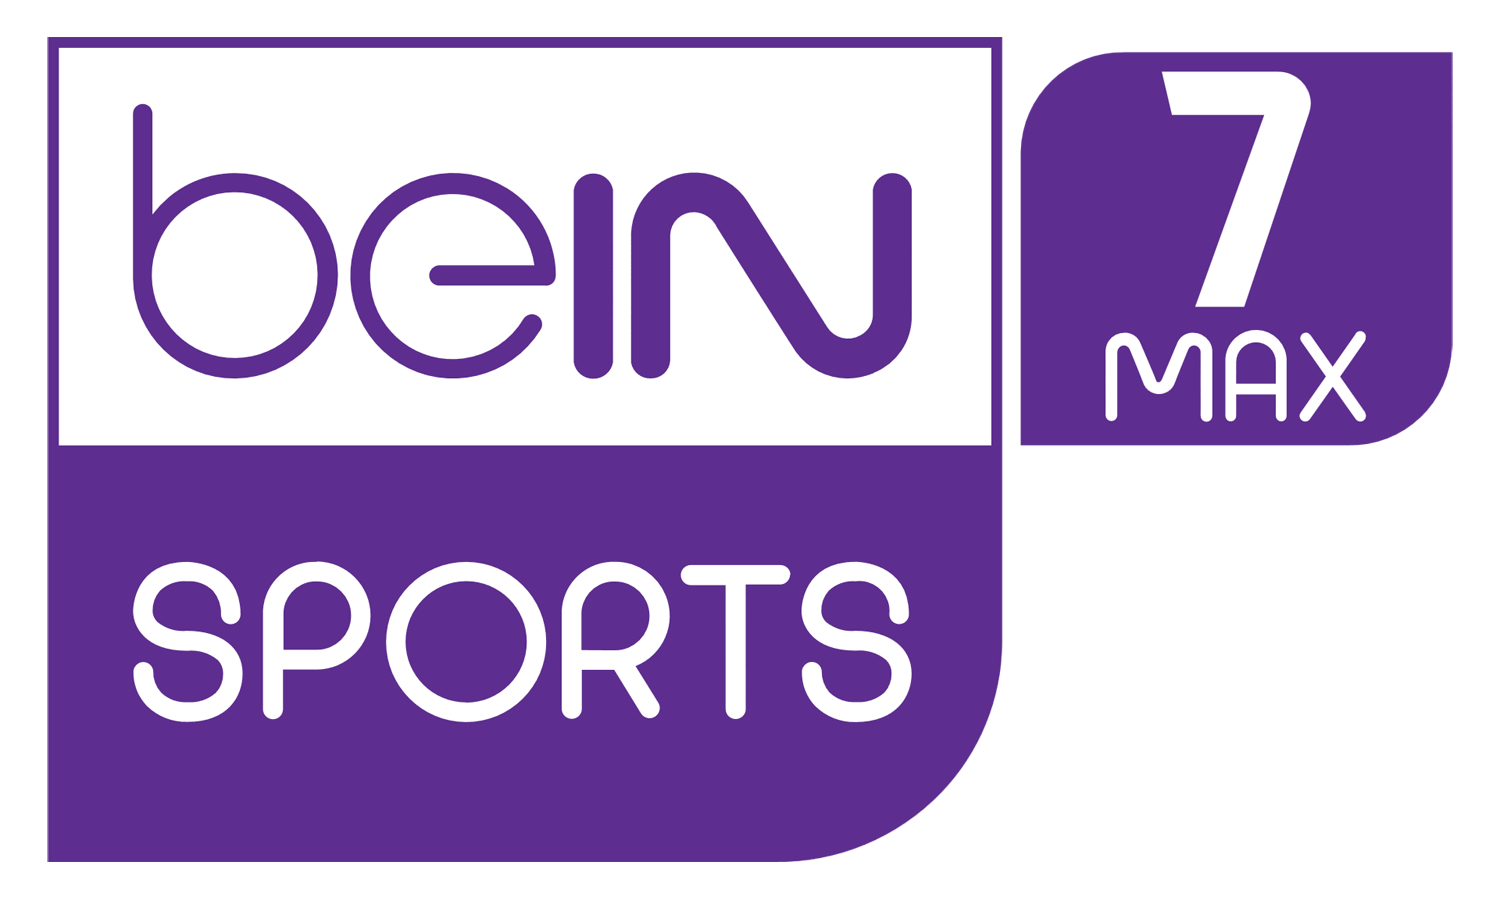 Bein Logo - BEIN SPORTS MAX 7 - LYNGSAT LOGO